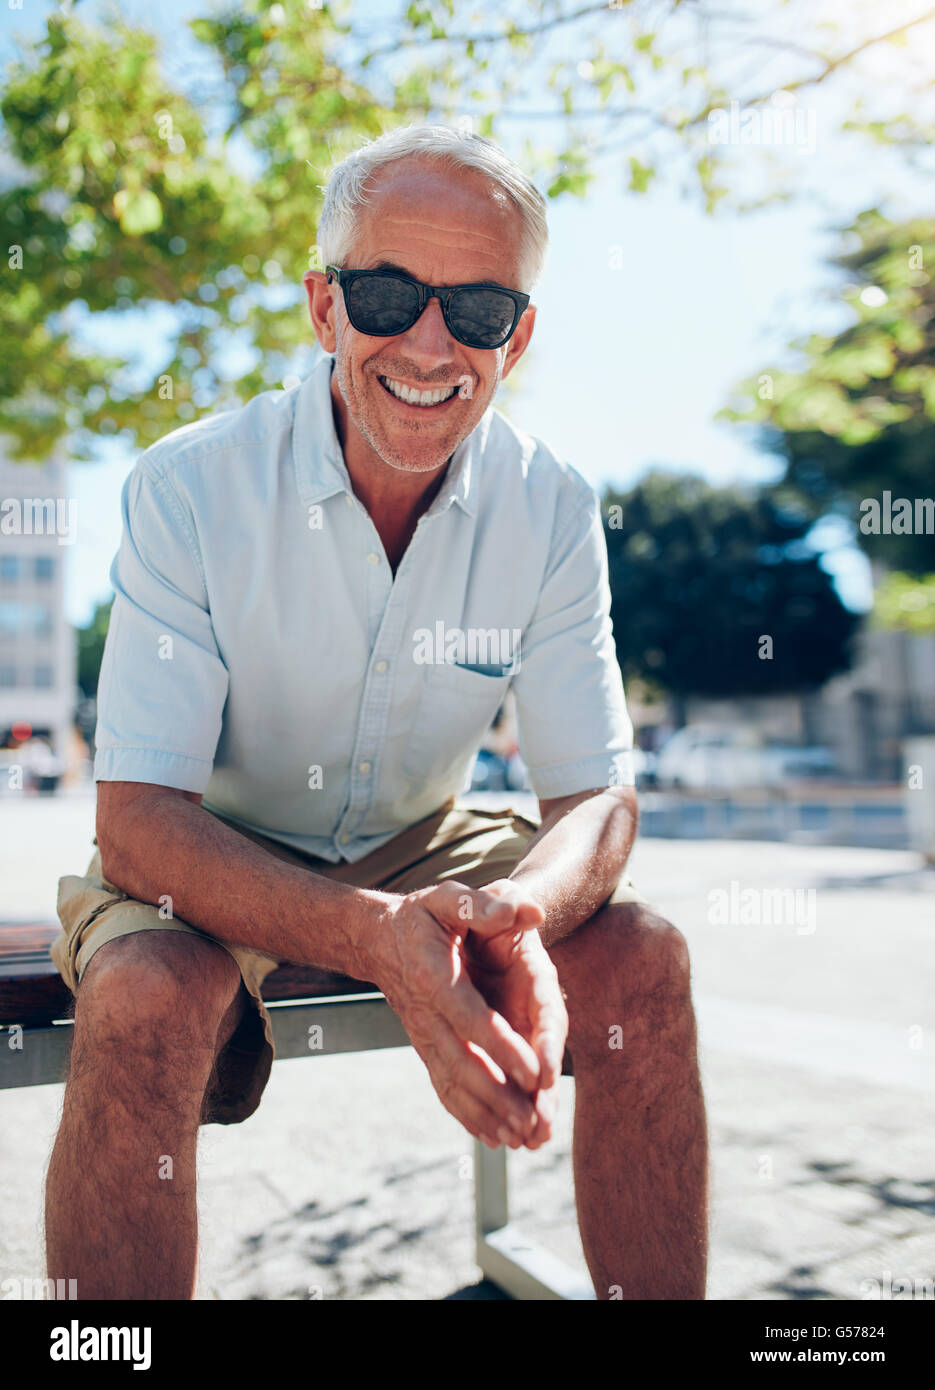 Porträt von lächelnden senior Tourist im Freien auf einer Bank sitzen. Reifen männlichen Touristen mit Sonnenbrille entspannend in der Stadt auf eine su Stockfoto